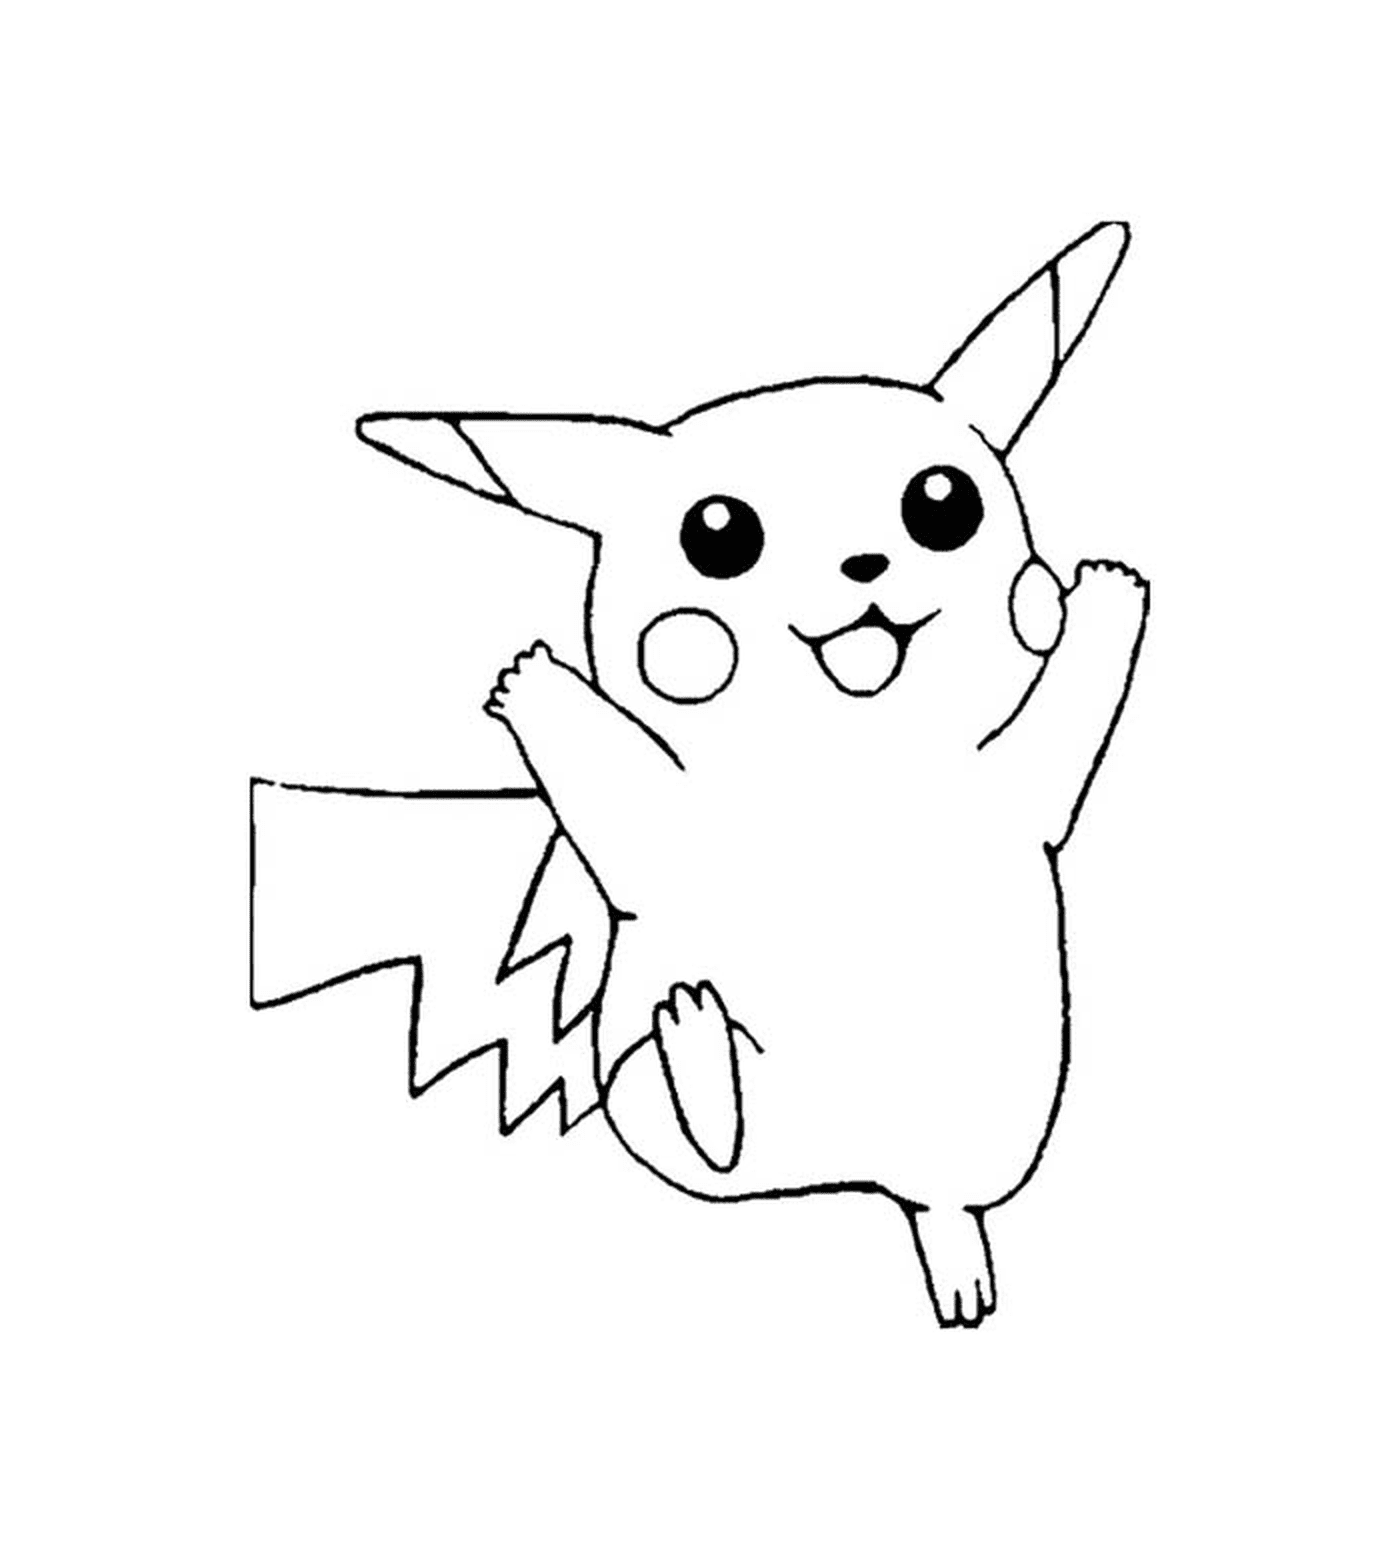  Pikachu, carino ed elettrico 